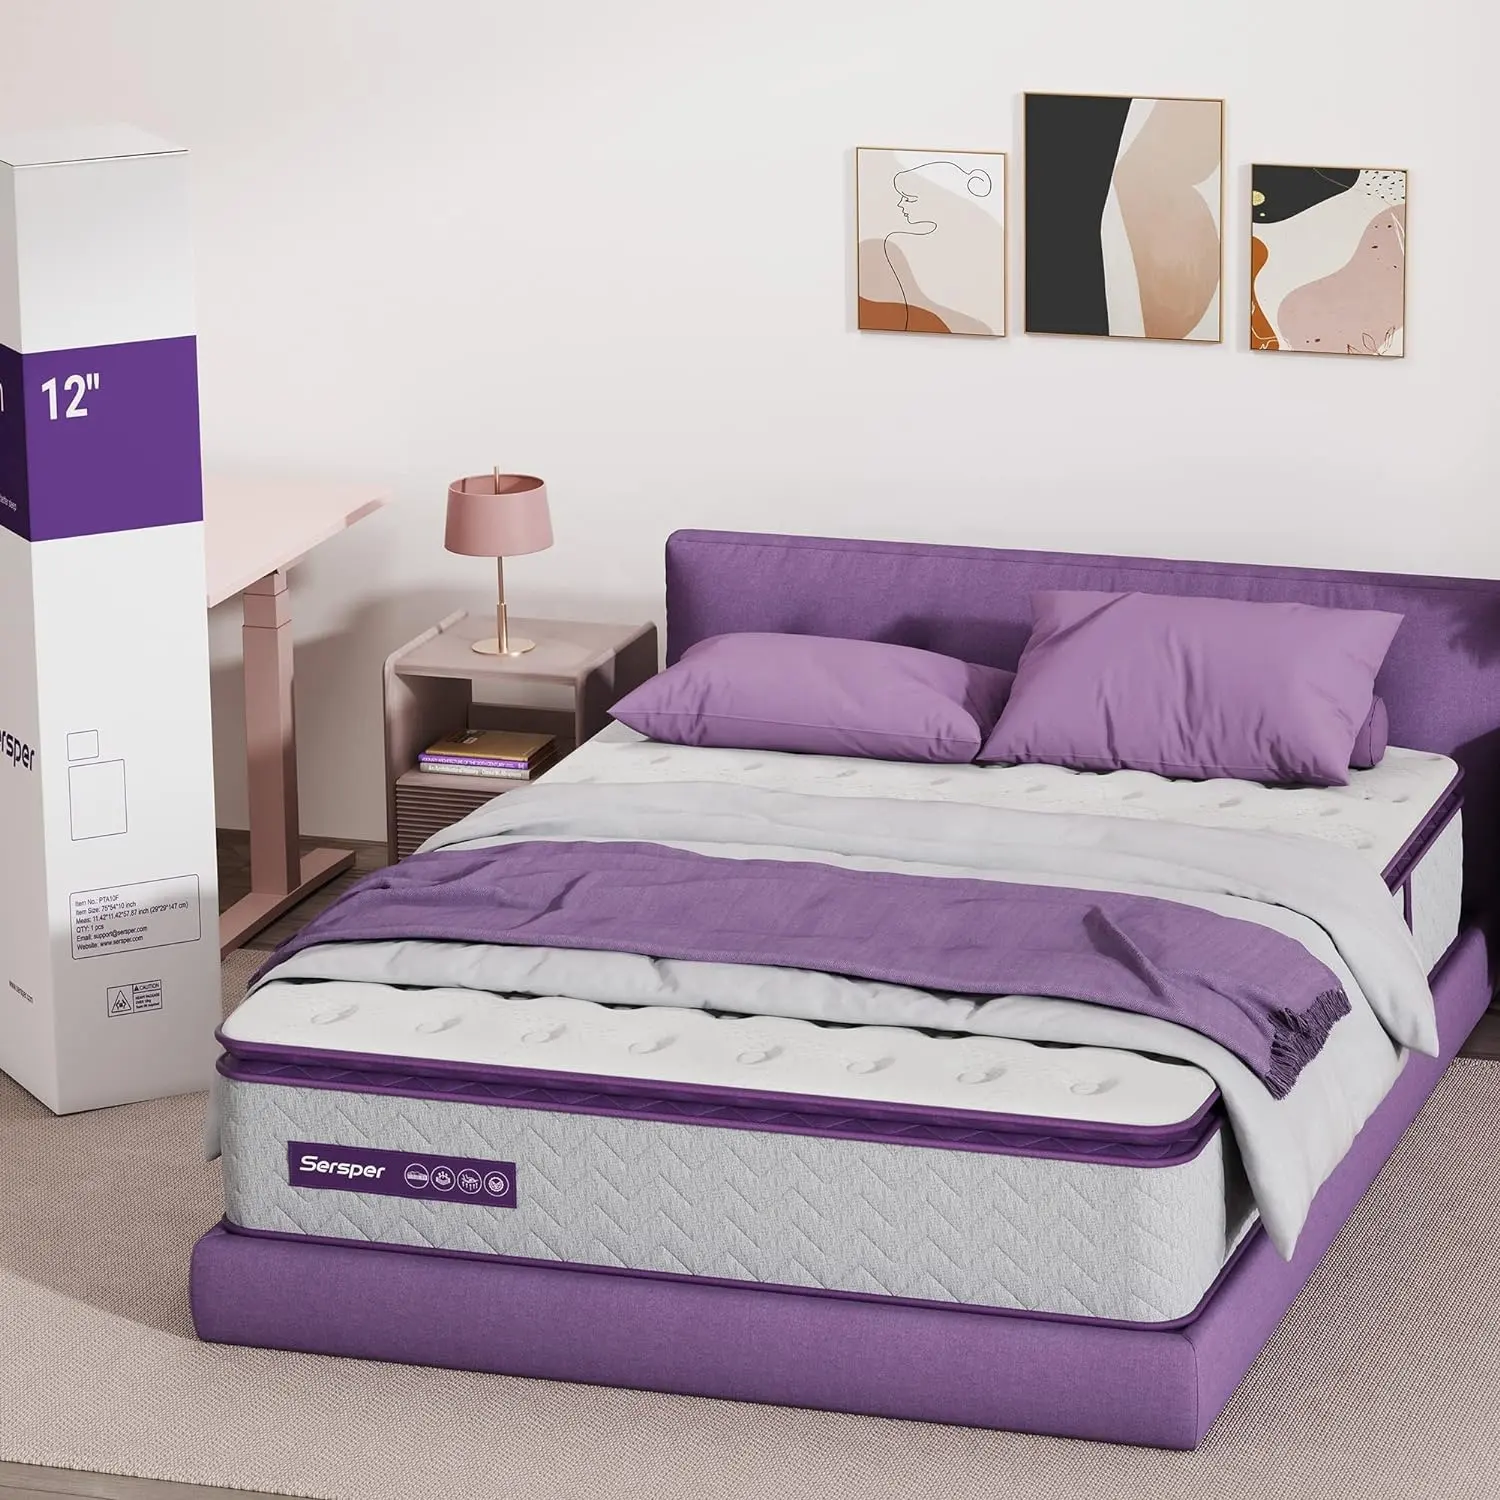 Hotel de lujo Queen King Size espuma viscoelástica Gel para dormir cama doble enrollable plegable en una caja colchón de muelles de bolsillo